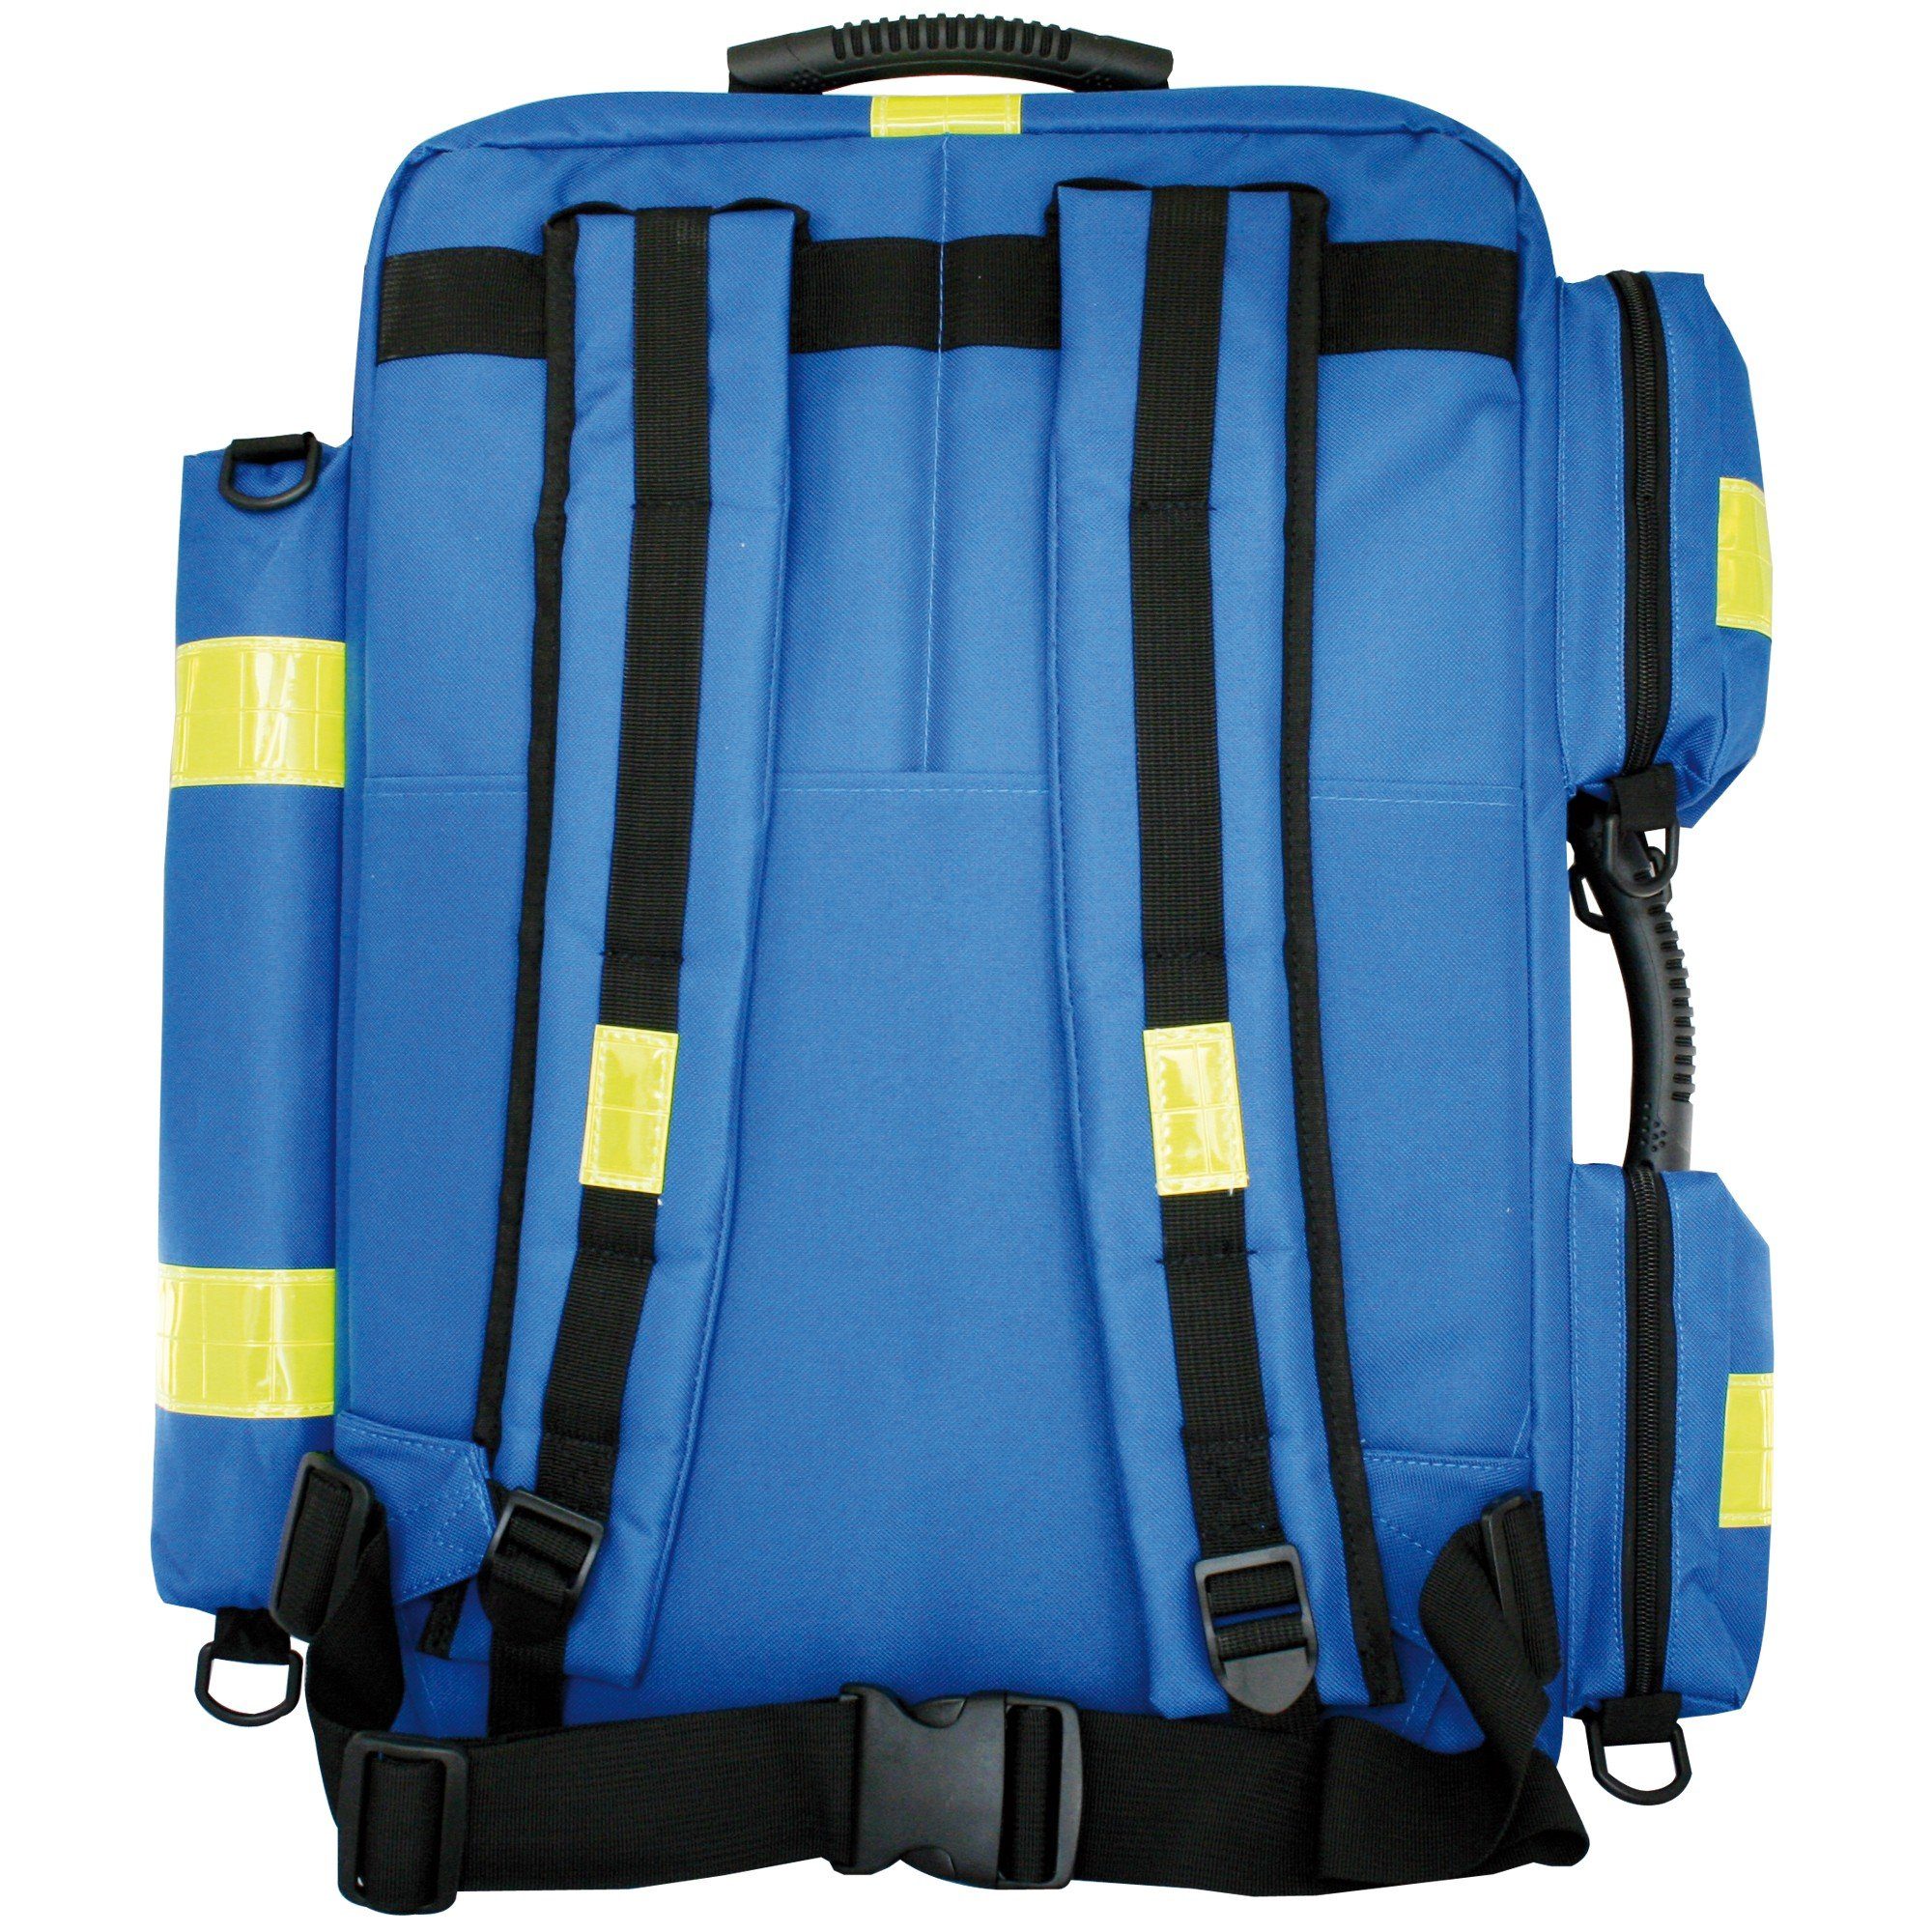 Nylon blau XL Arzttasche SANISMART Notfallrucksack gefüllt mit 13157 MEDICUS